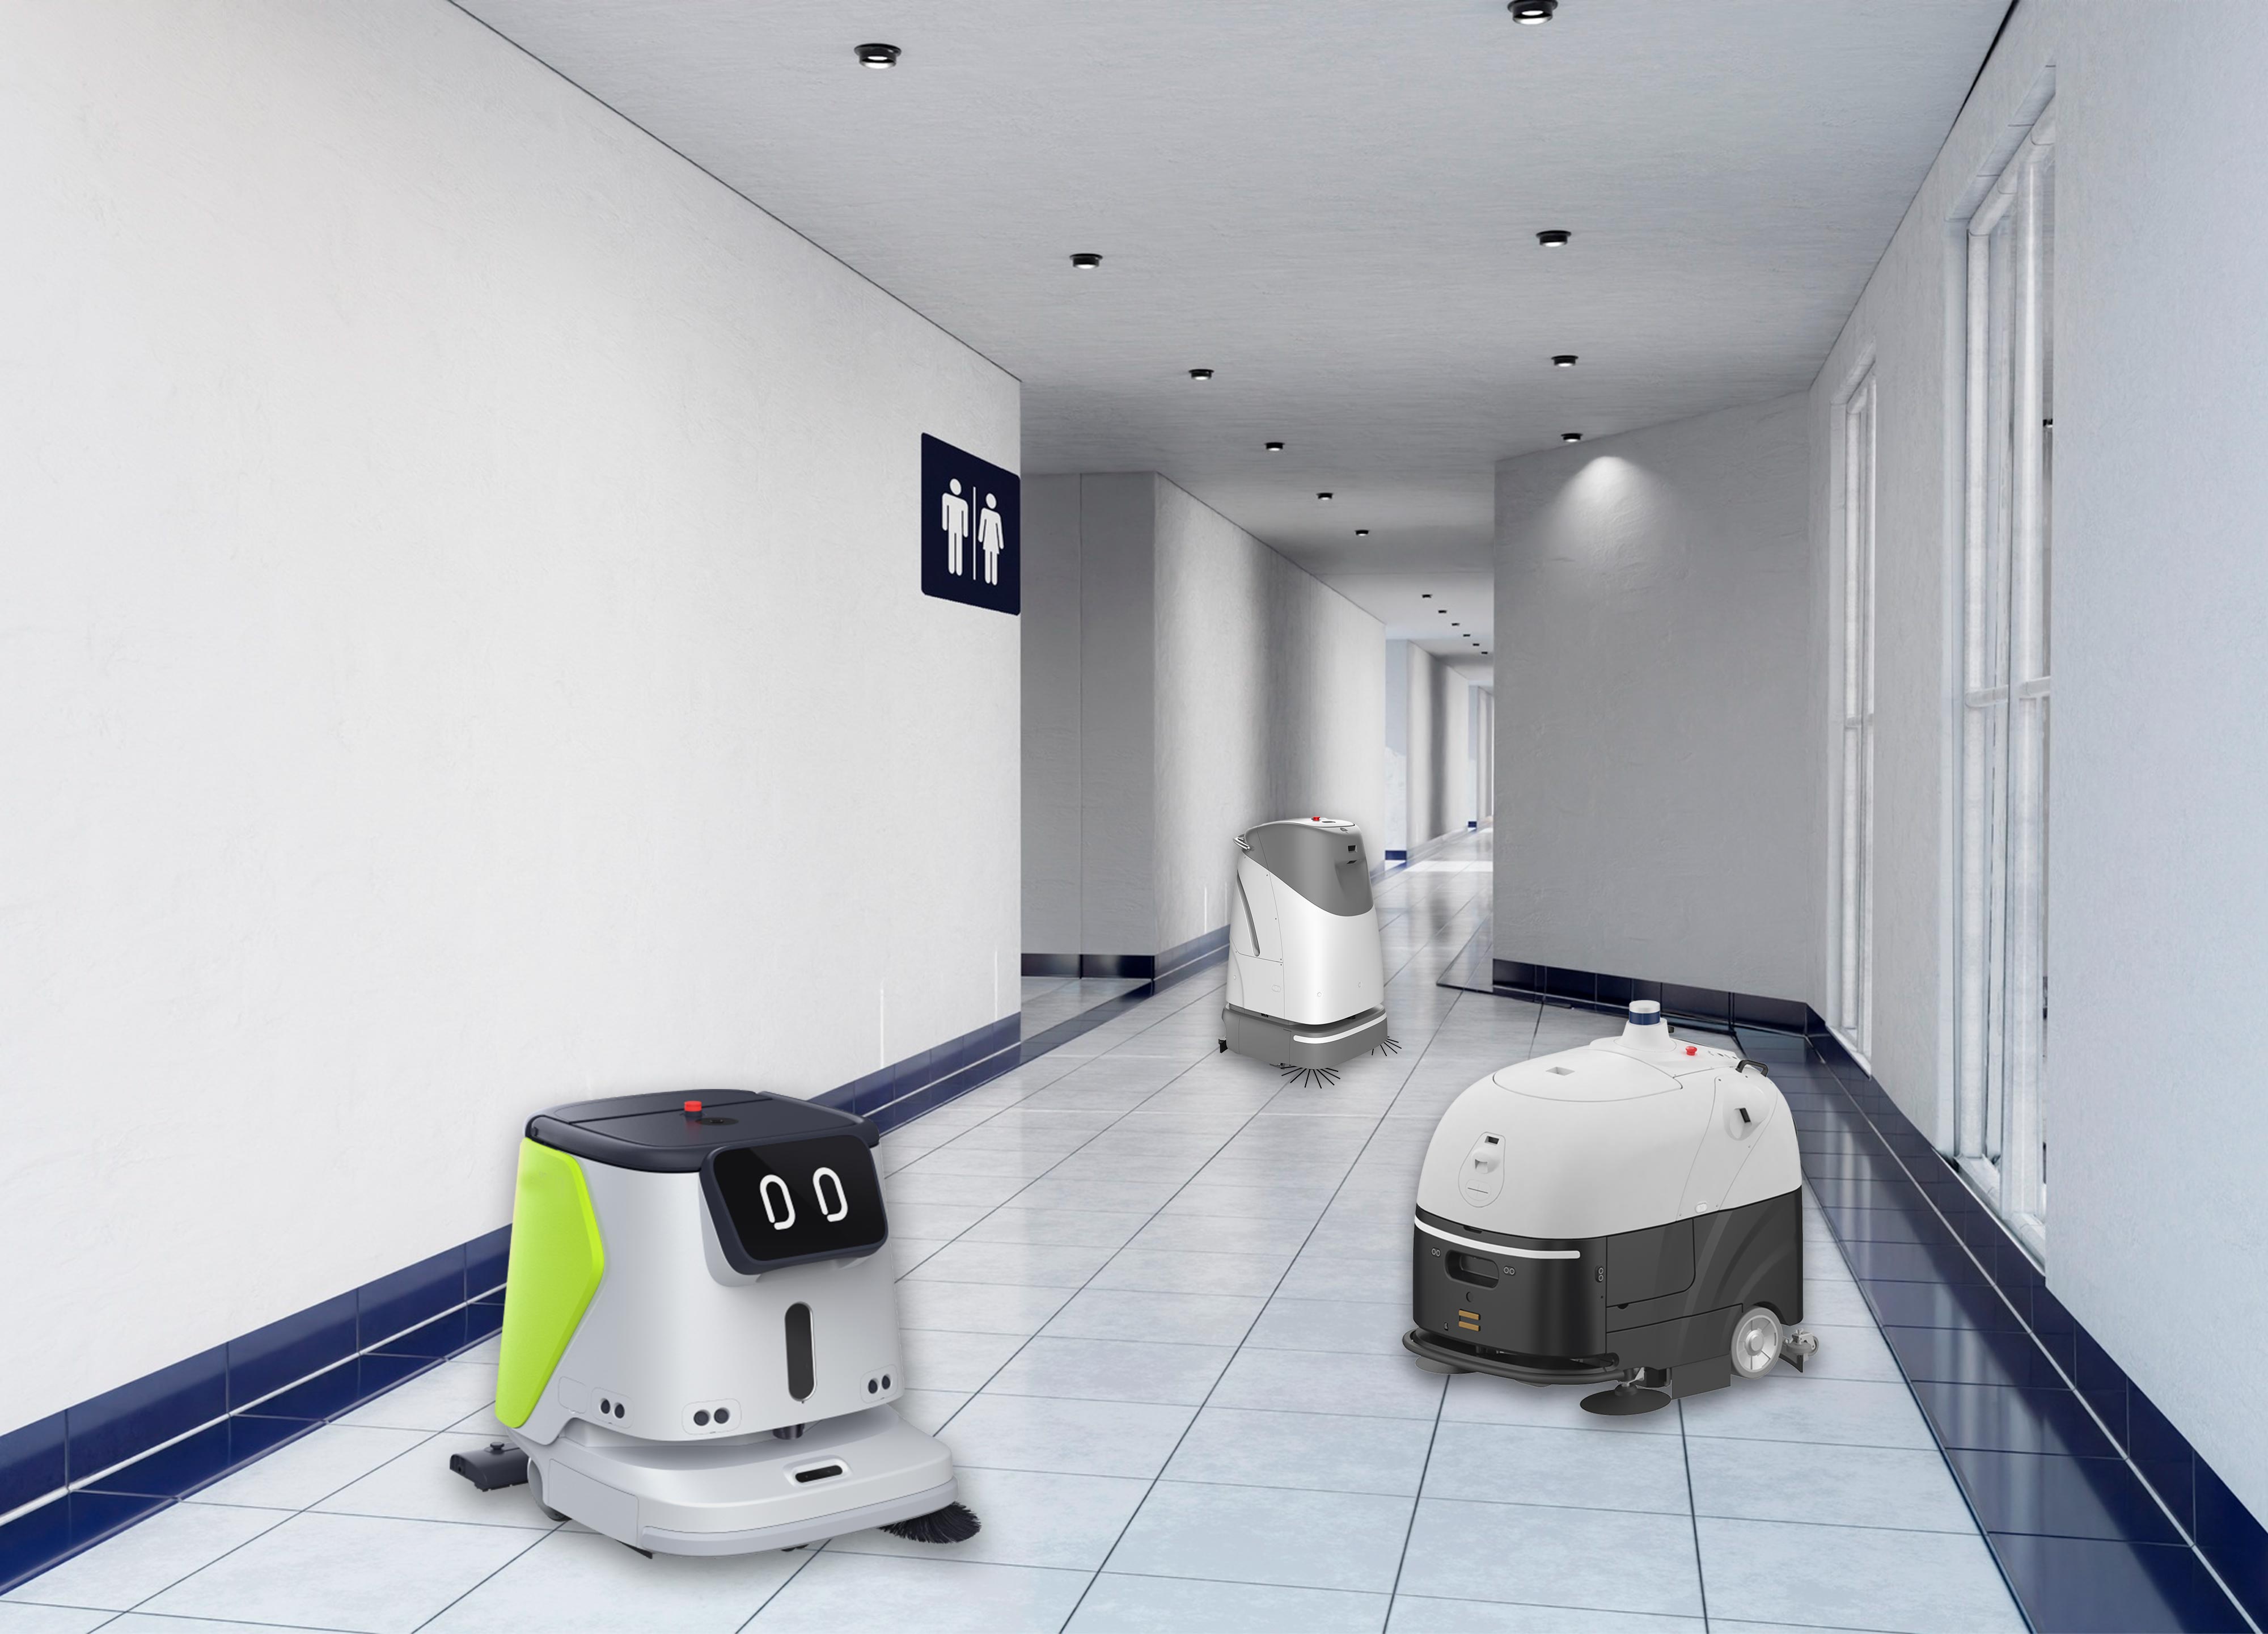 Autonomous floor cleaning robots inside a commercial building